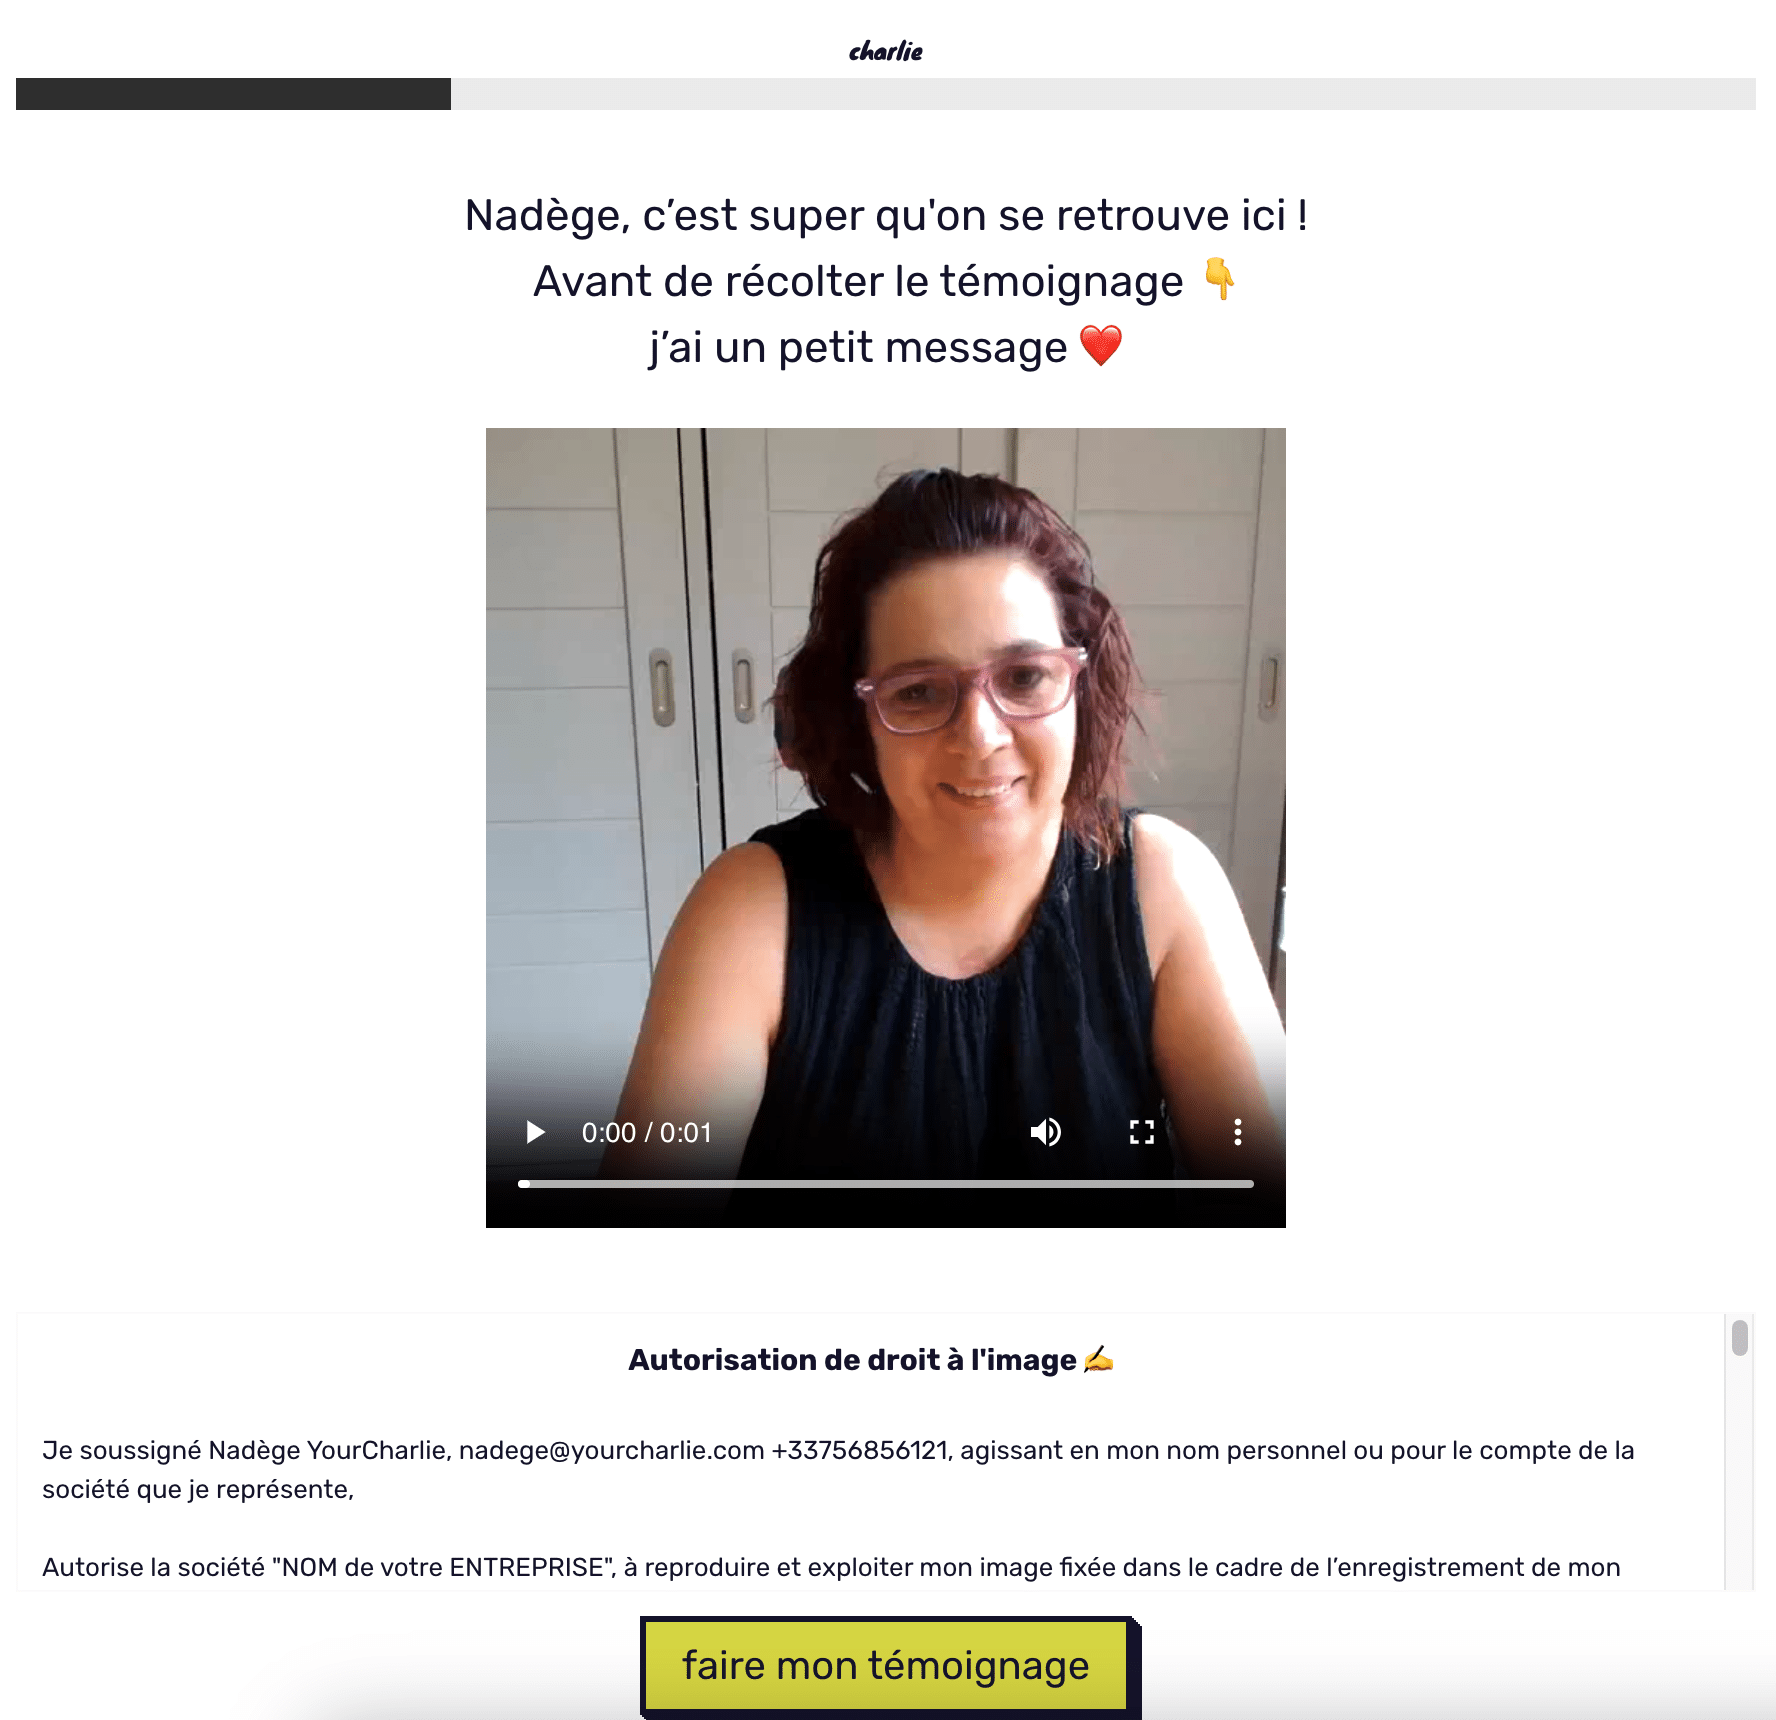 Une femme souriante prête à enregistrer son témoignage vidéo sur la plateforme YourCharlie, avec une incitation à l'action pour 'faire mon témoignage'.